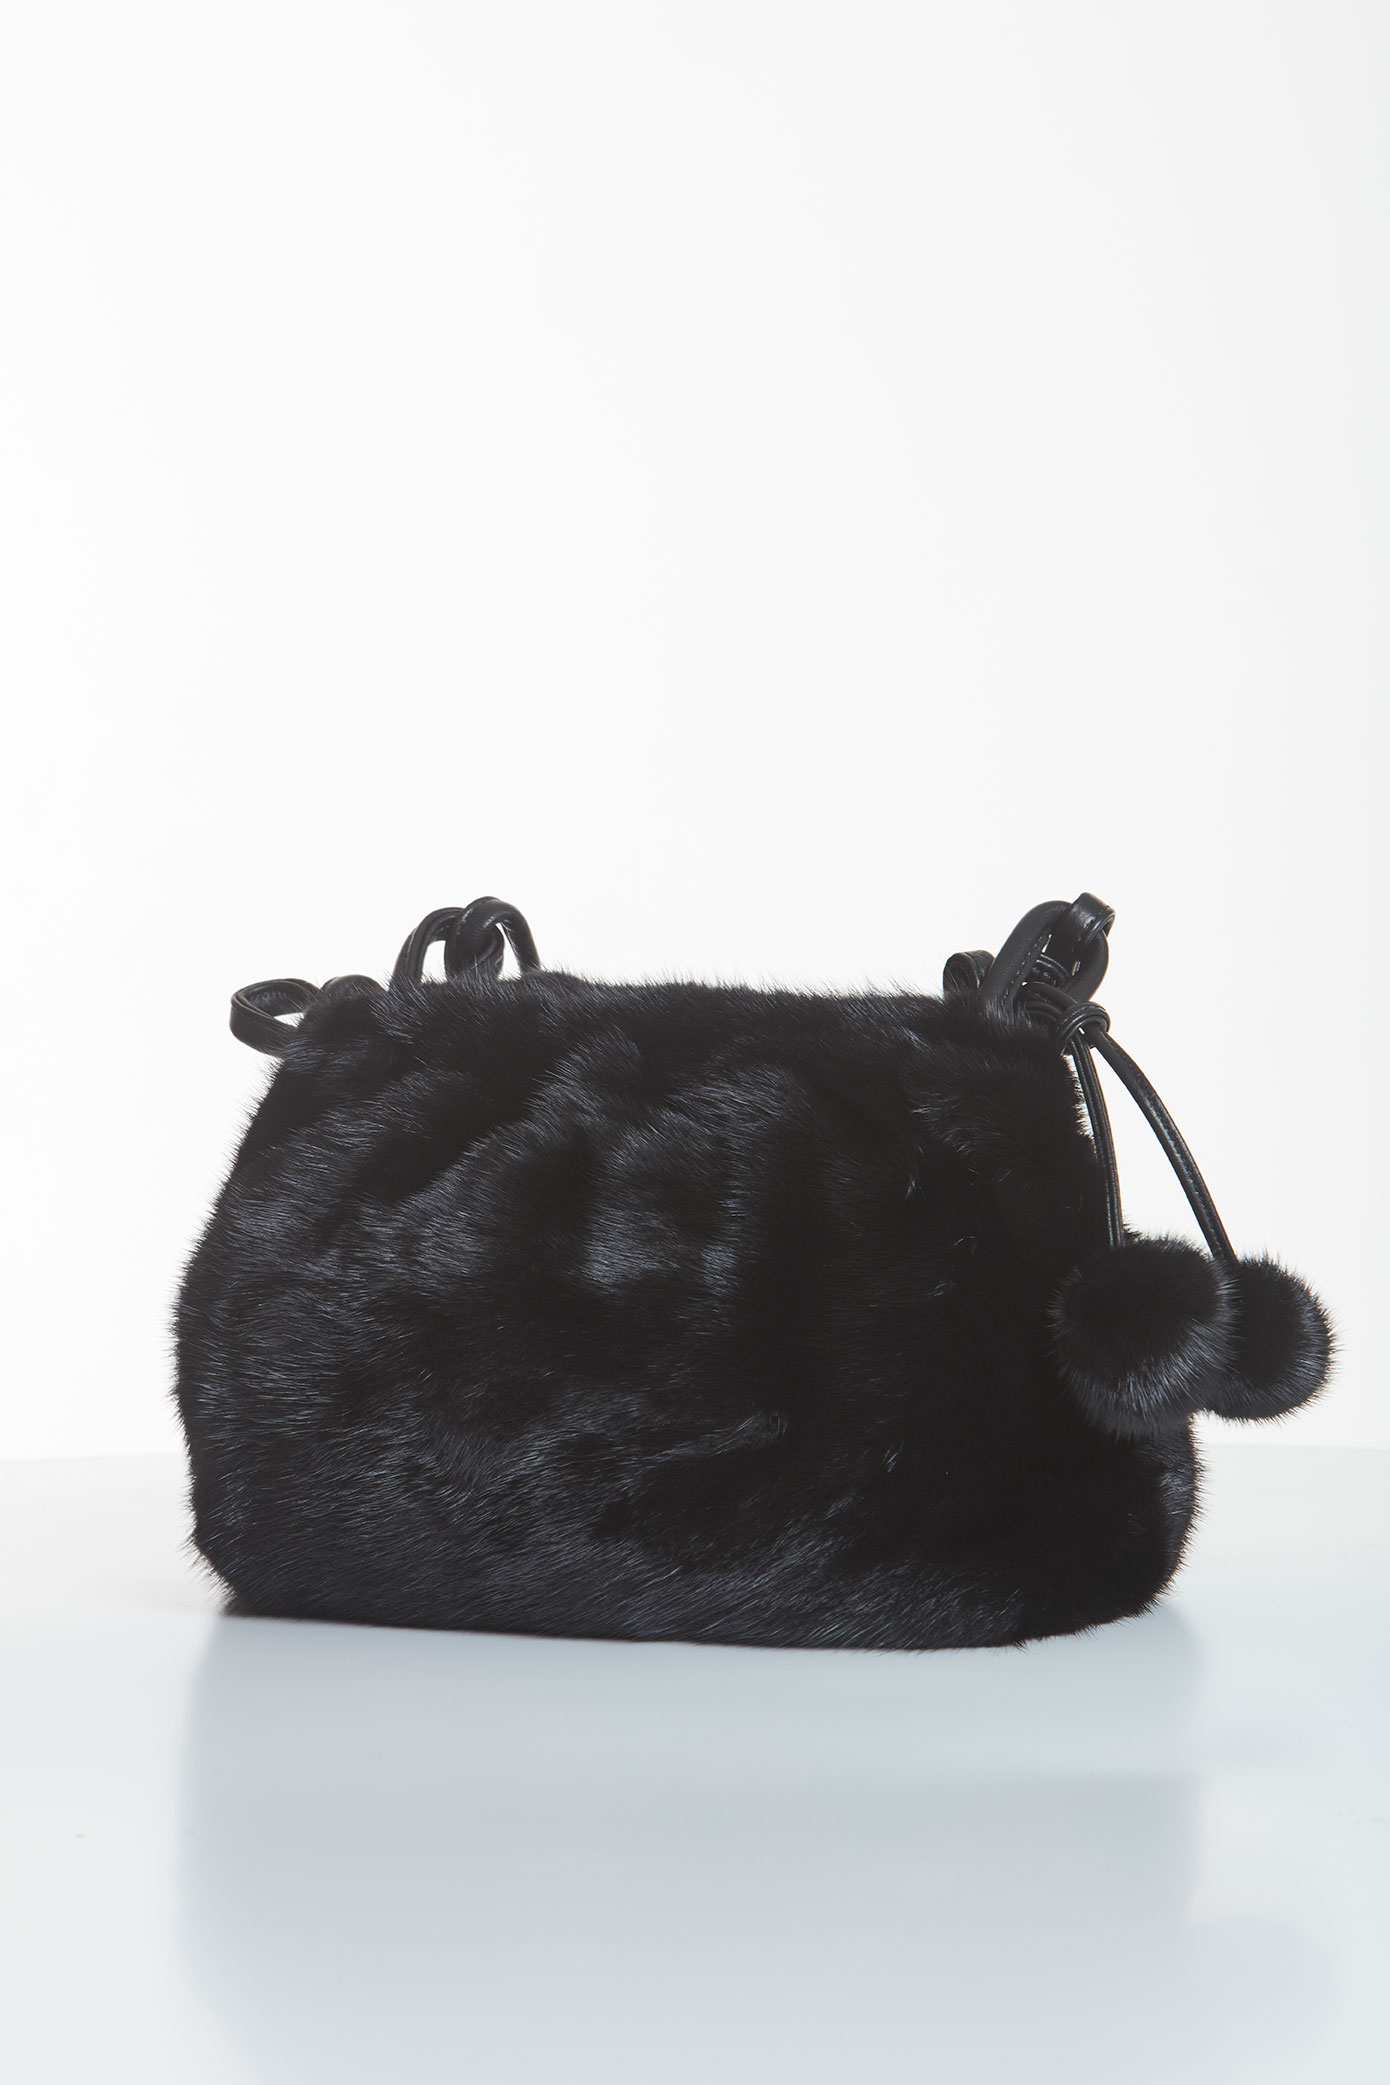 mink-handbag-black